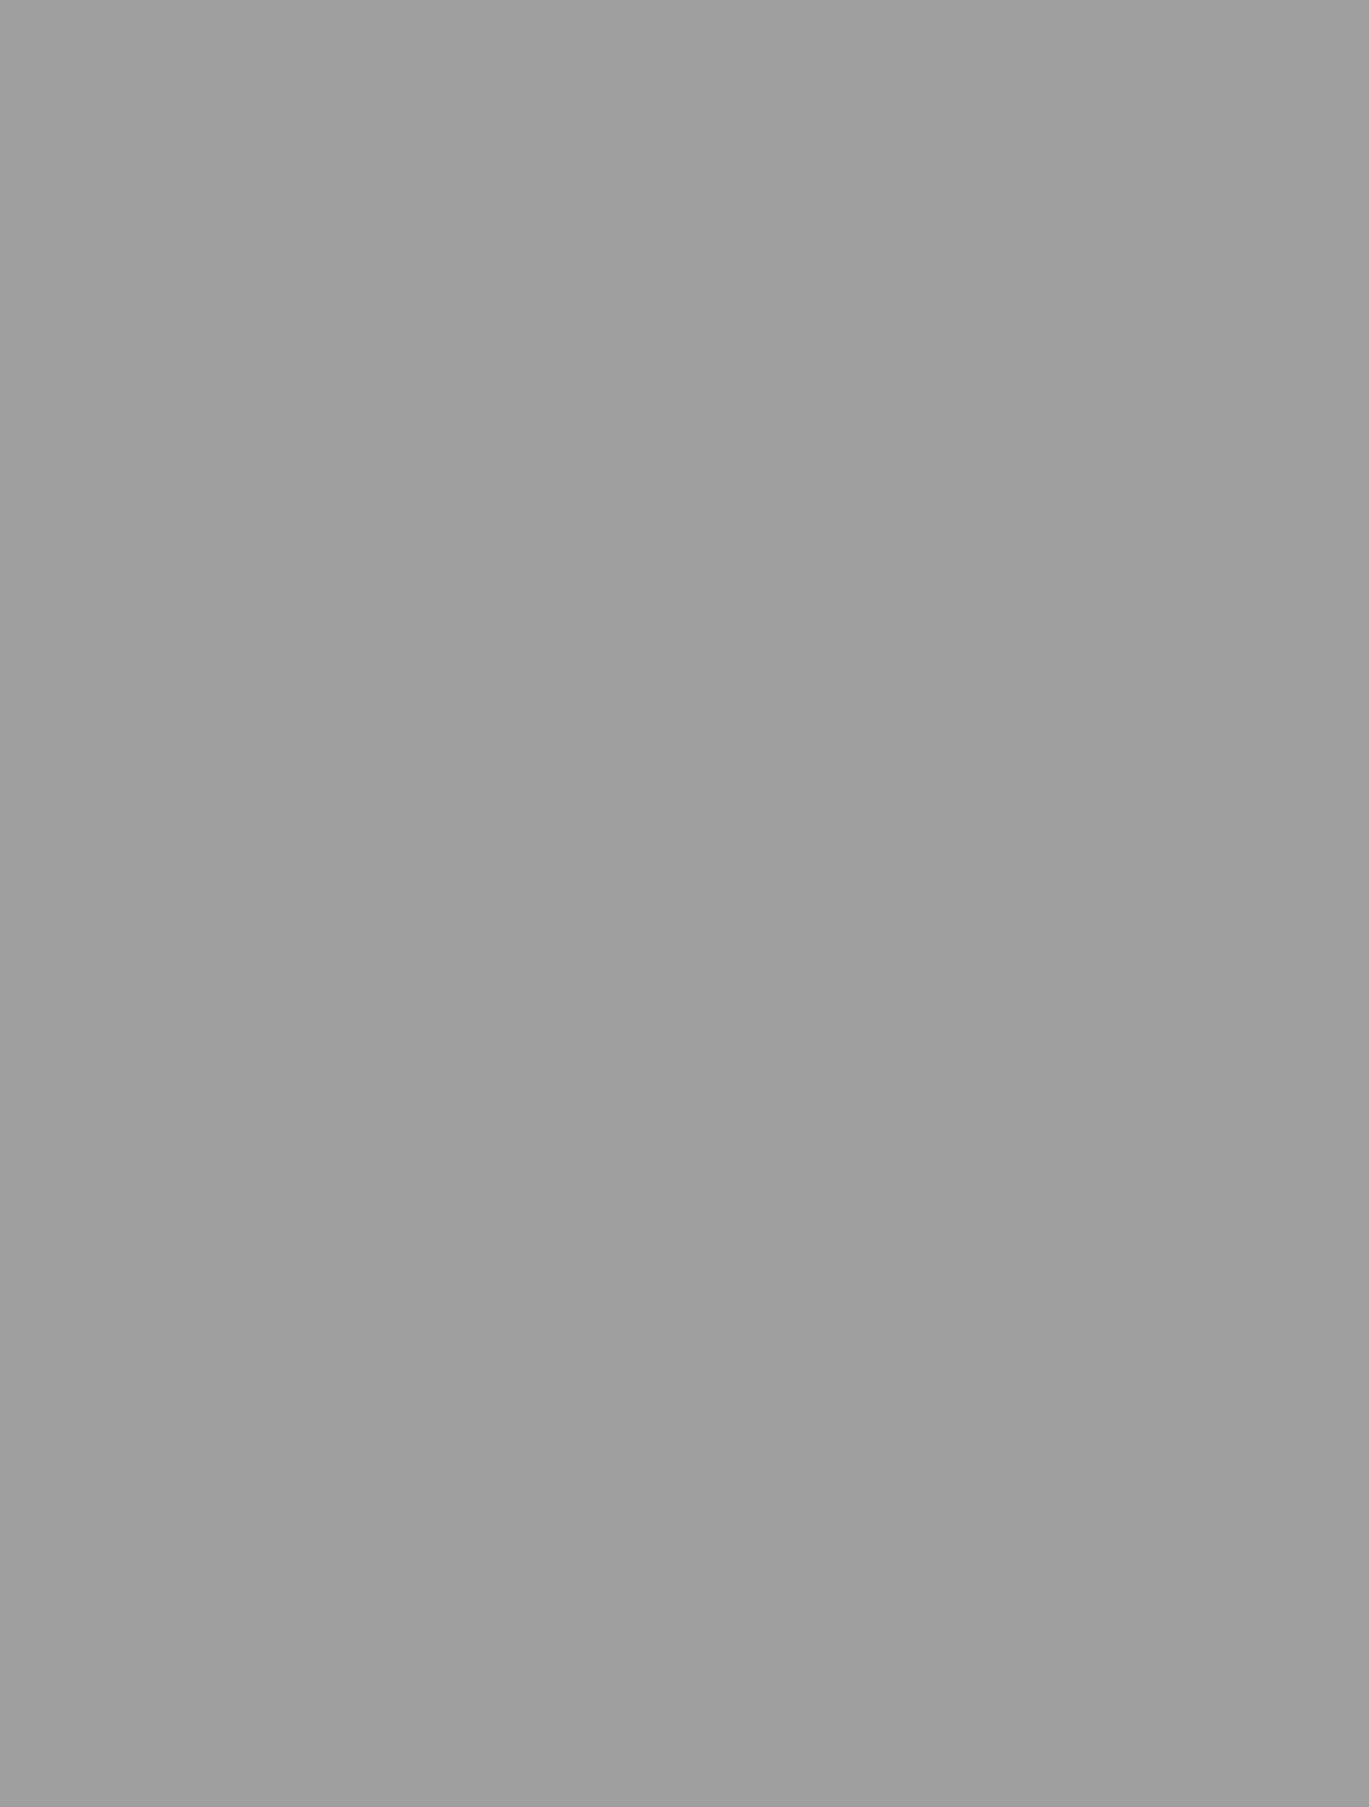 Василий Стасов. Копия с портрета работы Александра Варнека. 1820. Фотография: walkspb.ru